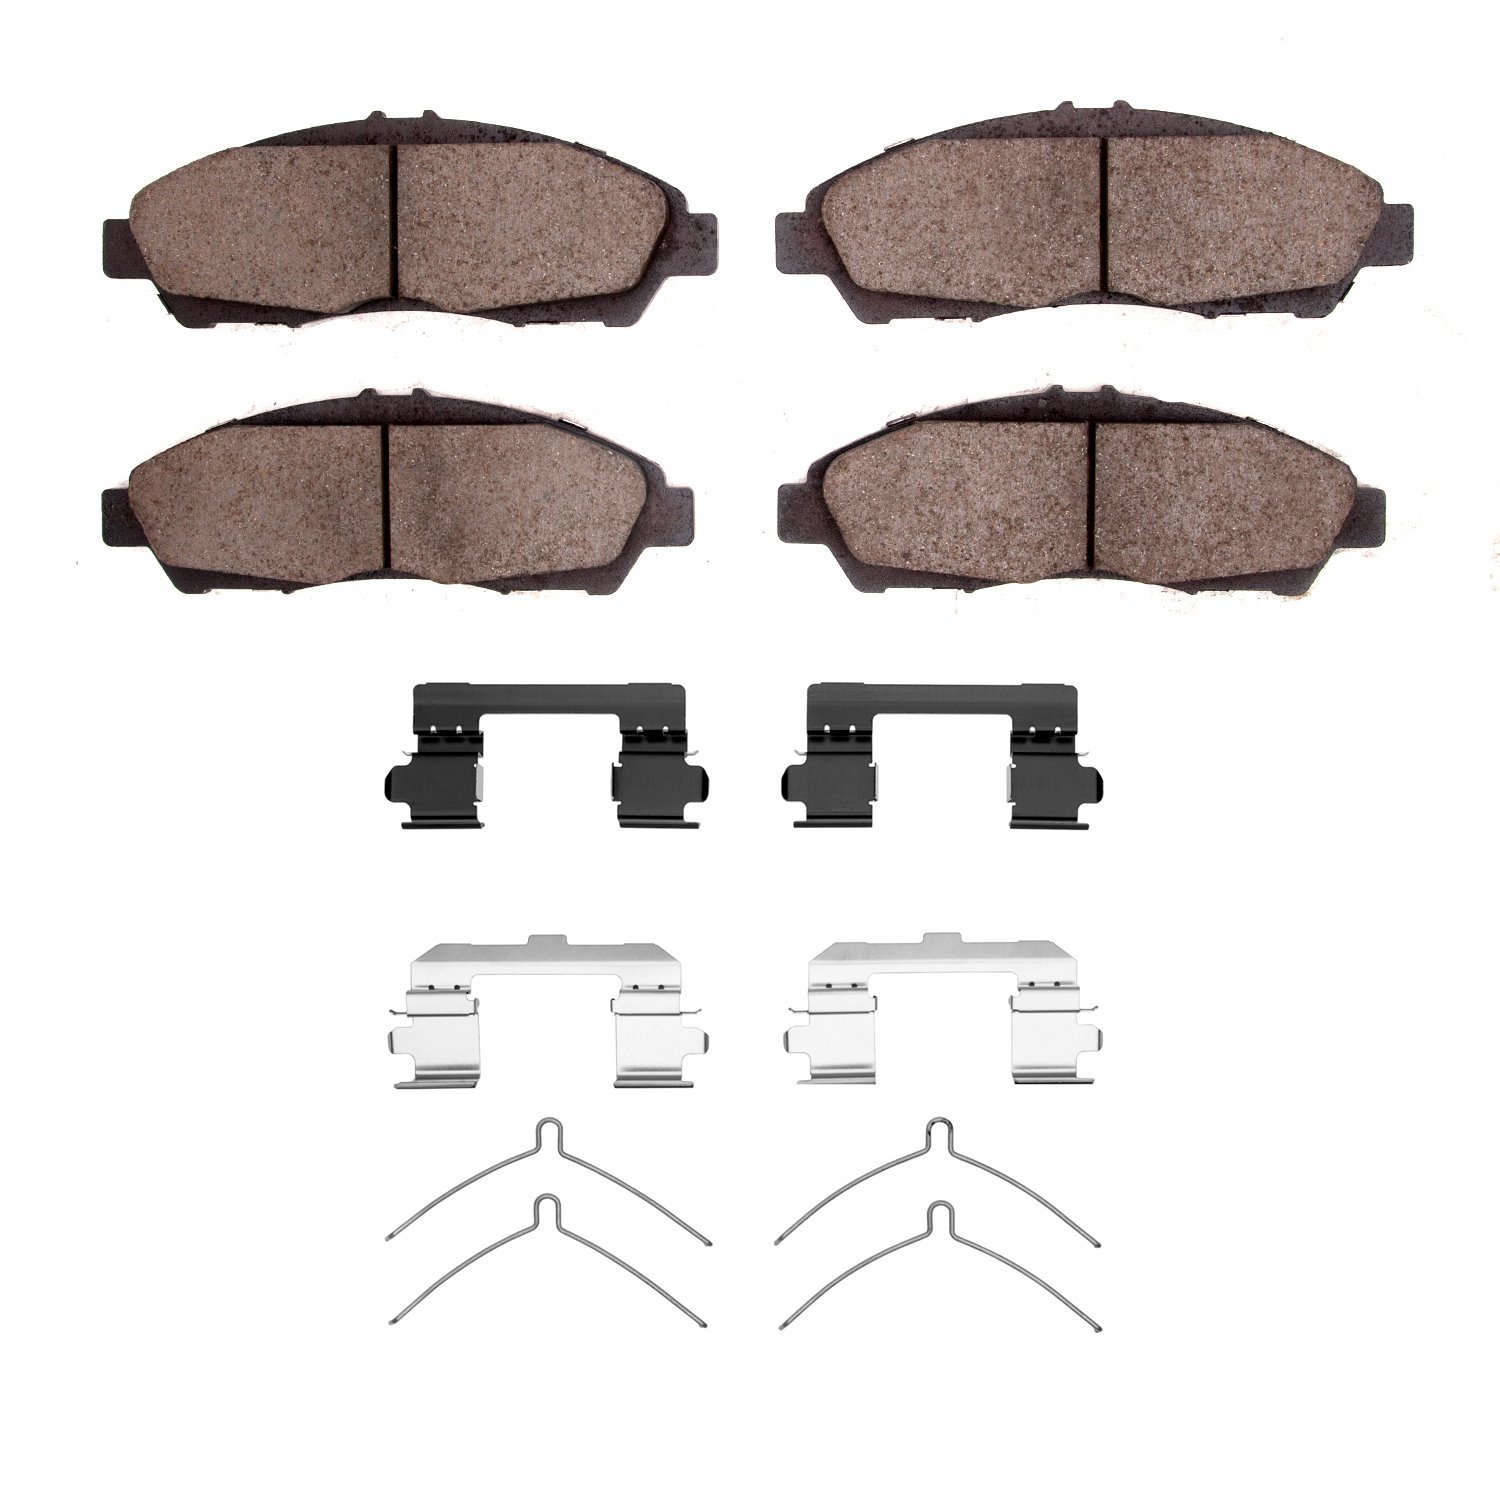 1310-1896-01 3000-Series Ceramic Brake Pads & Hardware Kit, 2017-2020 GM, Position: Front